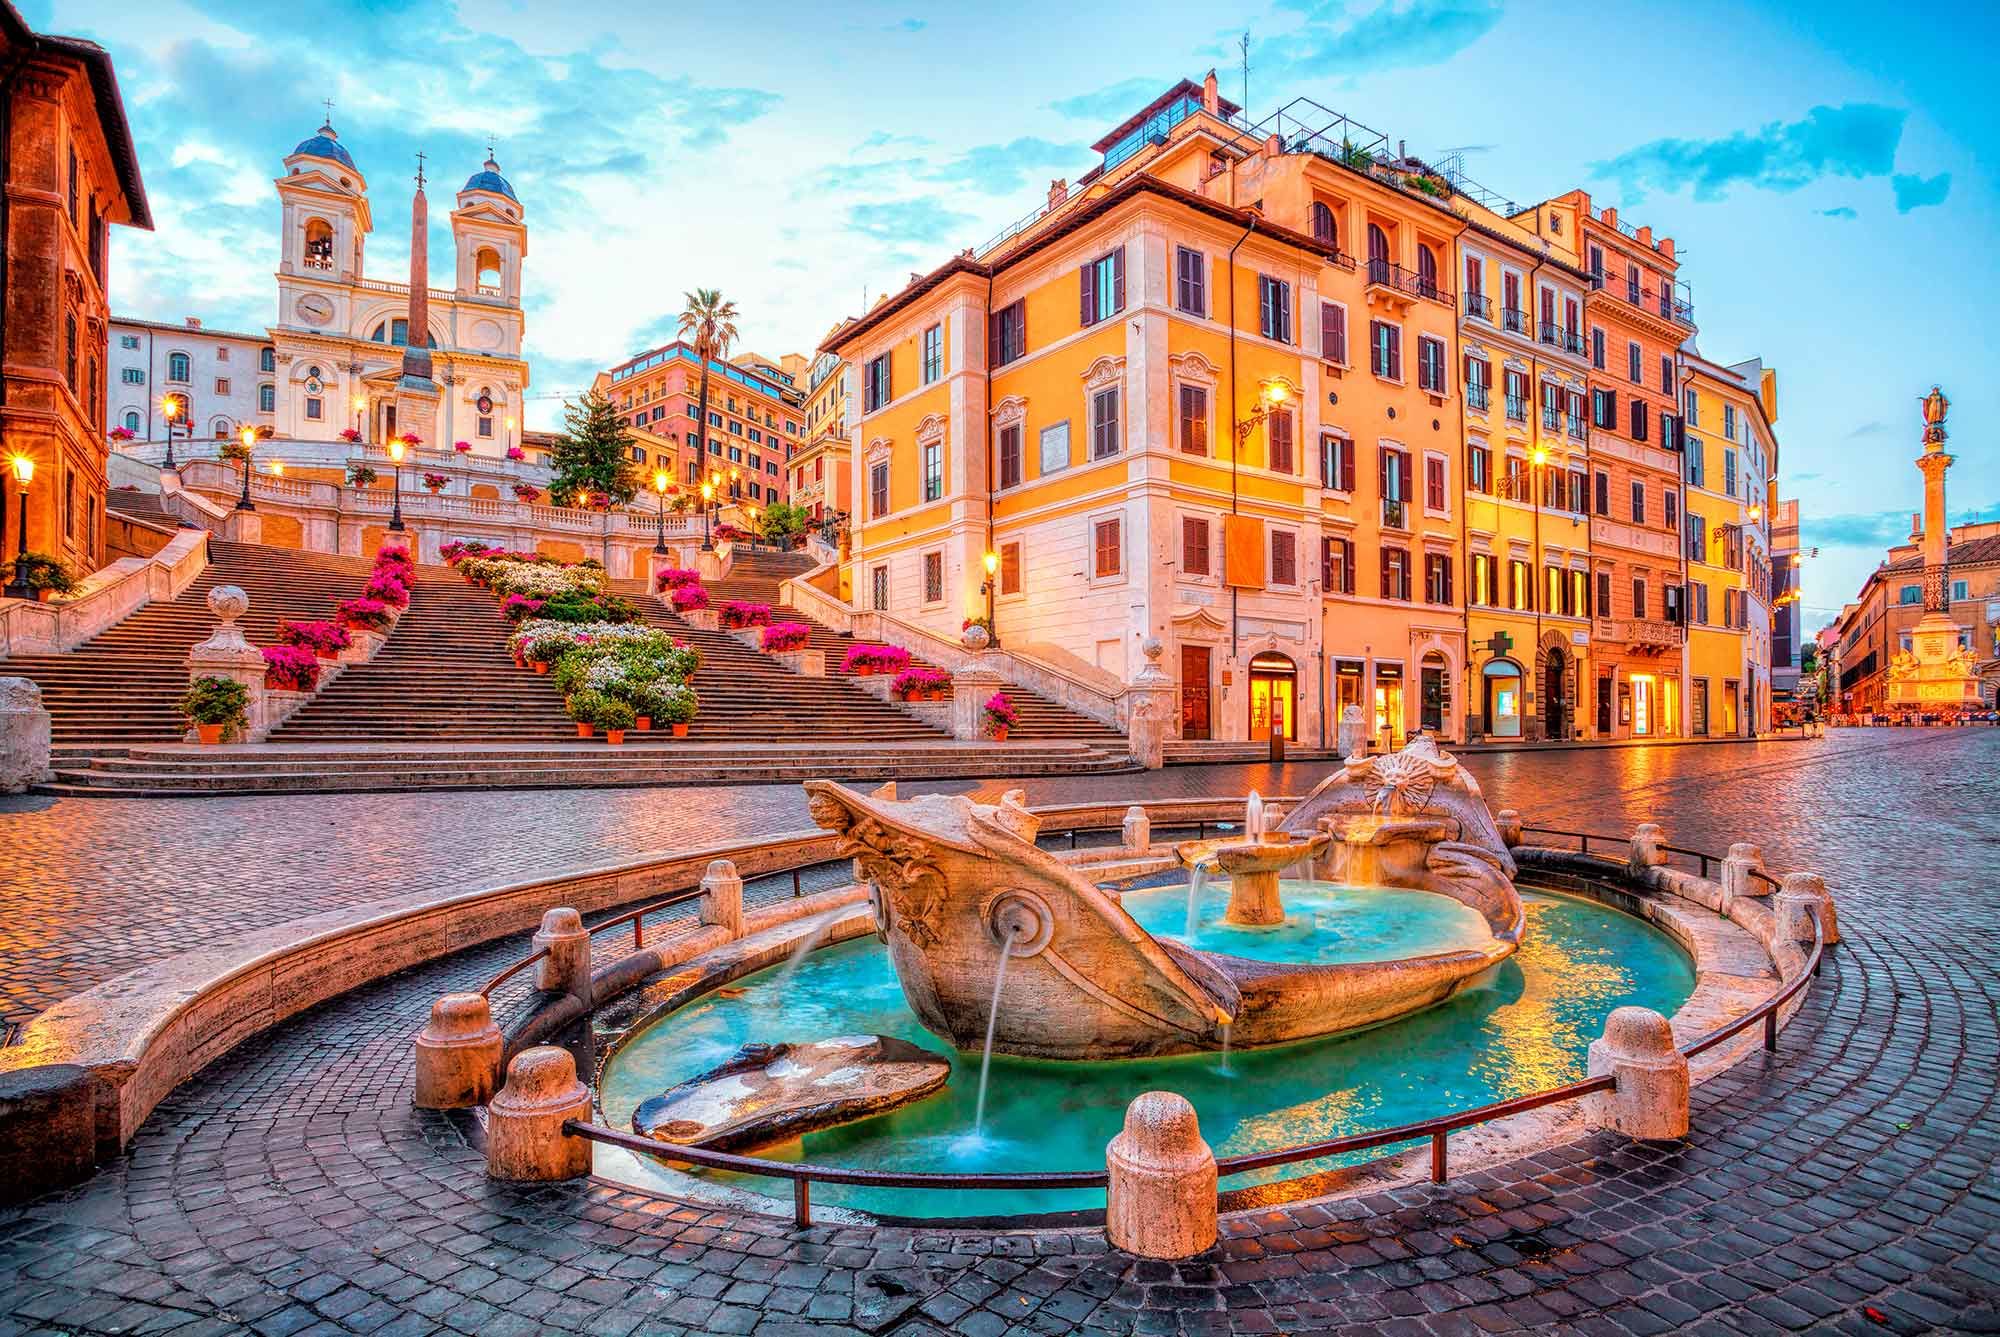 Rome - Discover Fontana di Trevi##Discover Colosseum##Discover Vatican City